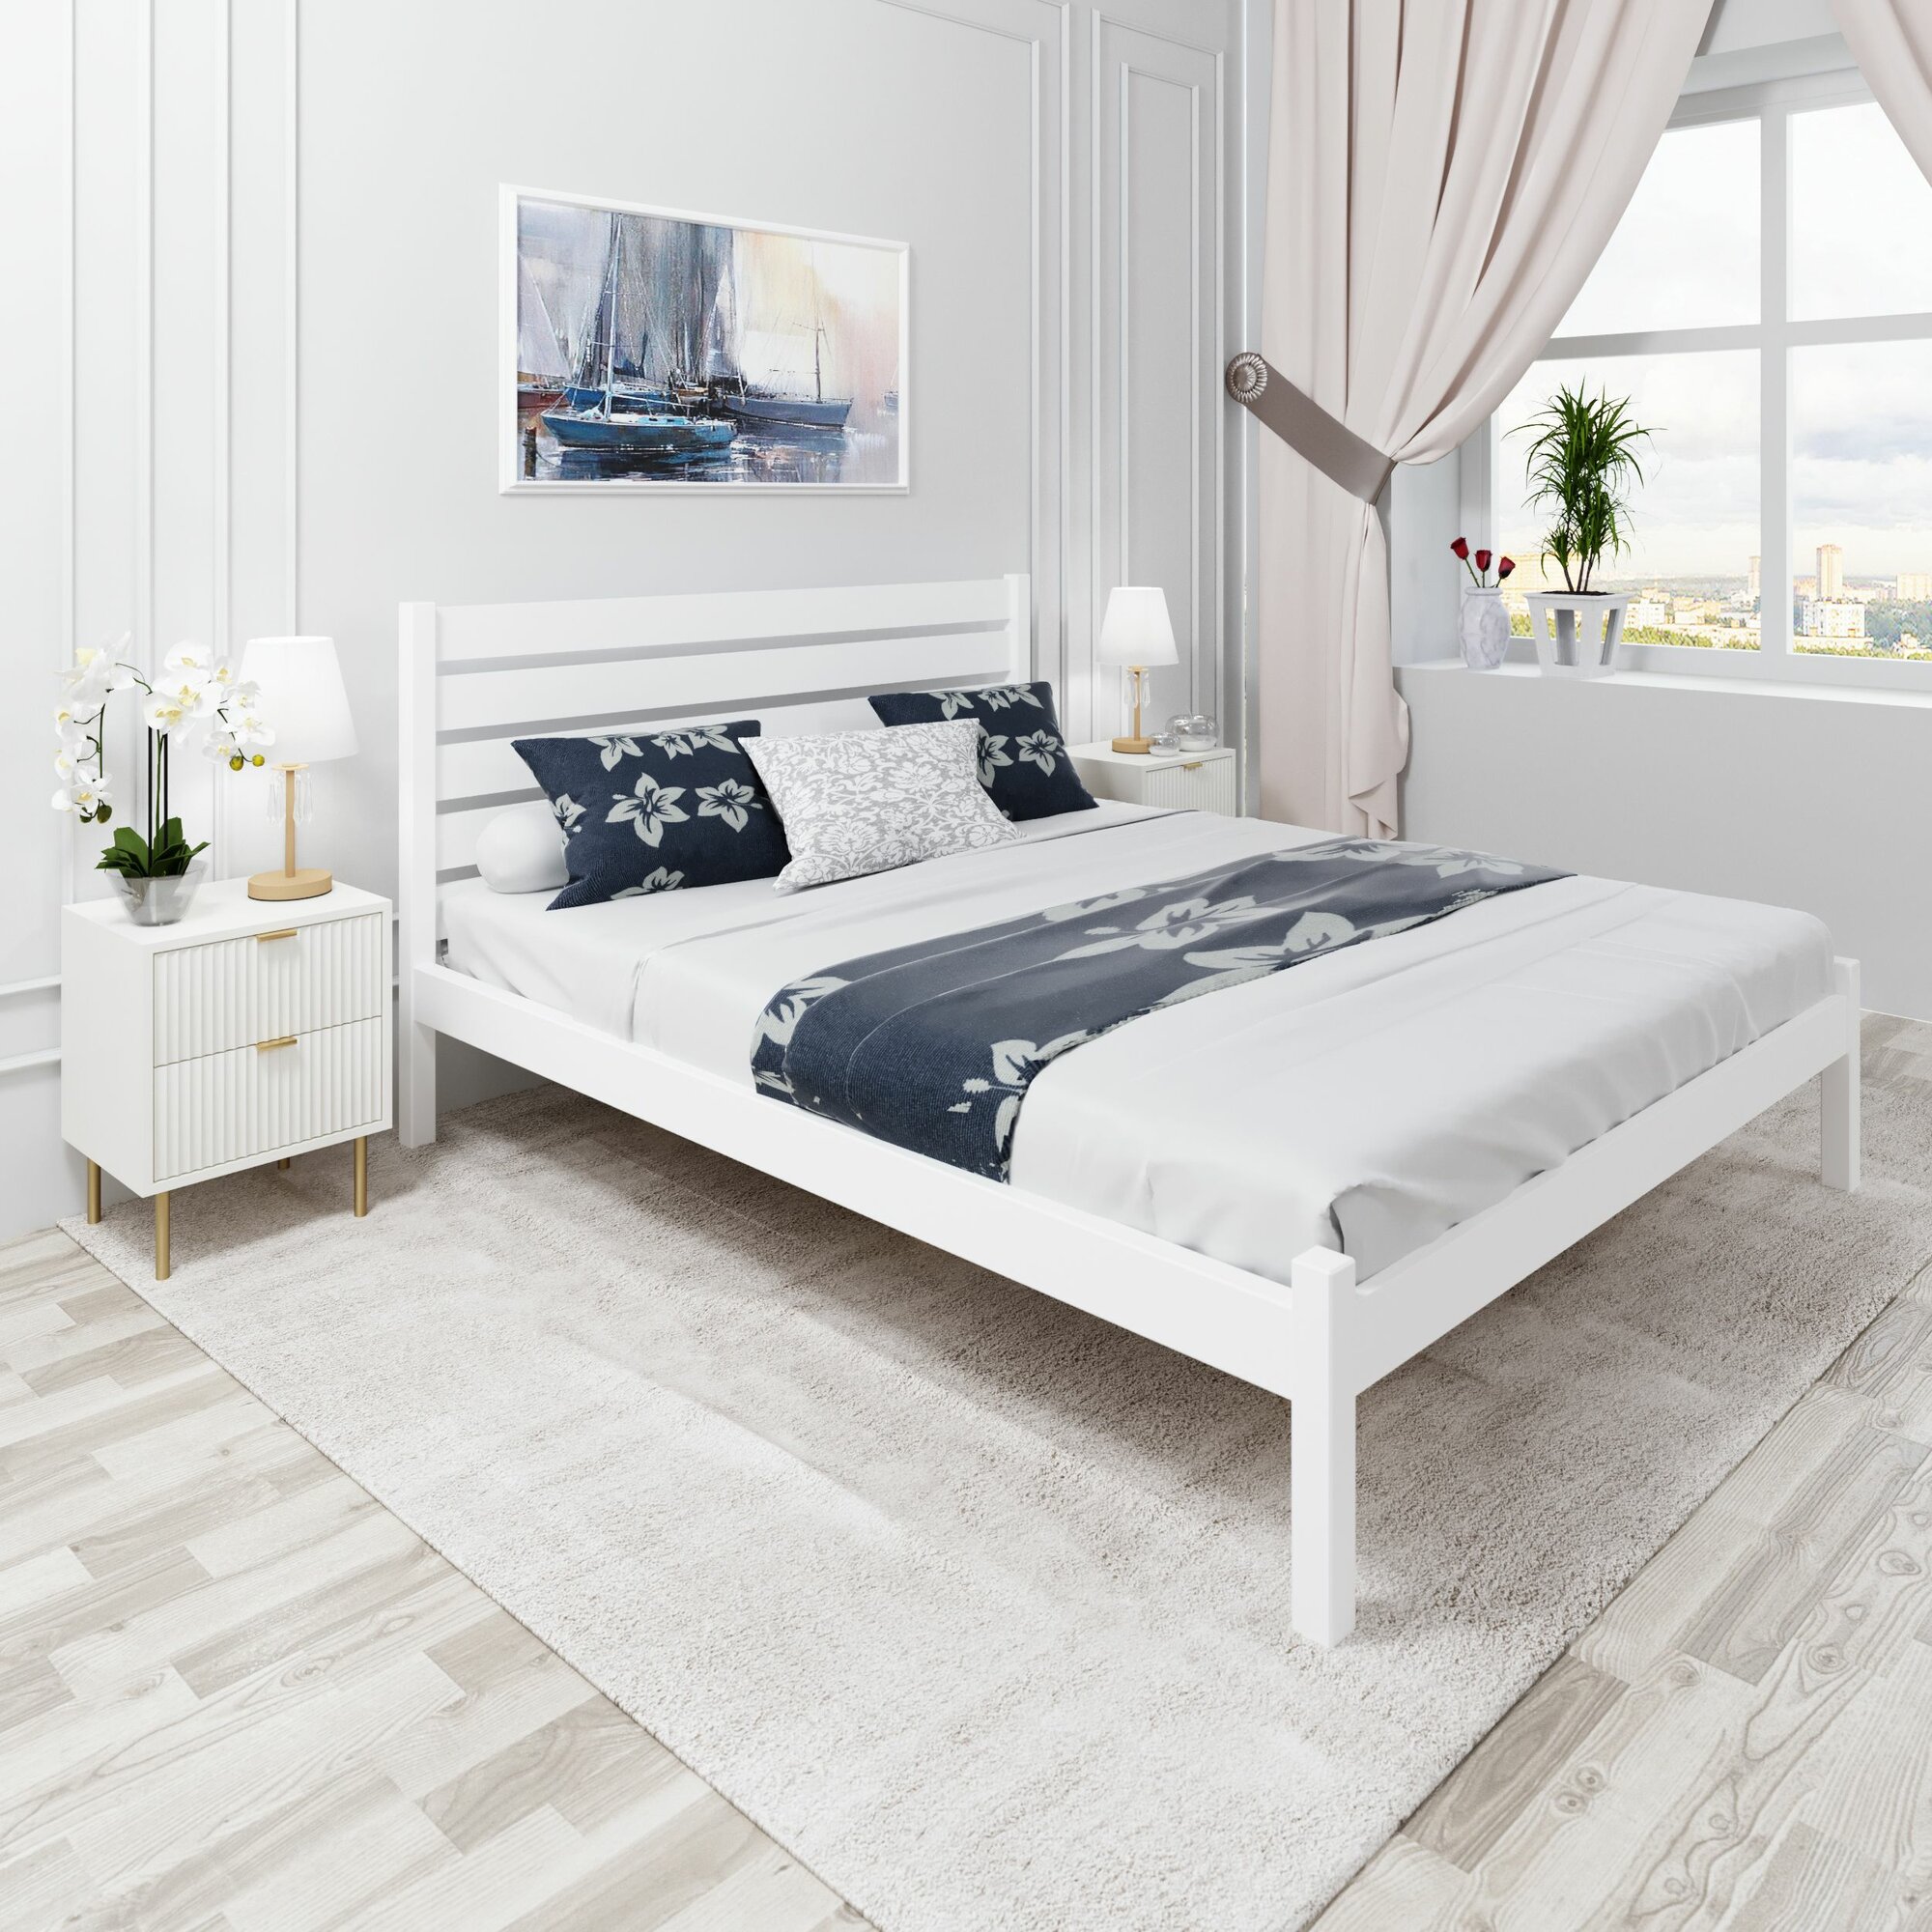 Кровать двуспальная Классика из массива сосны с высокой спинкой и реечным основанием, 200х180 см (габариты 210х190), цвет белый